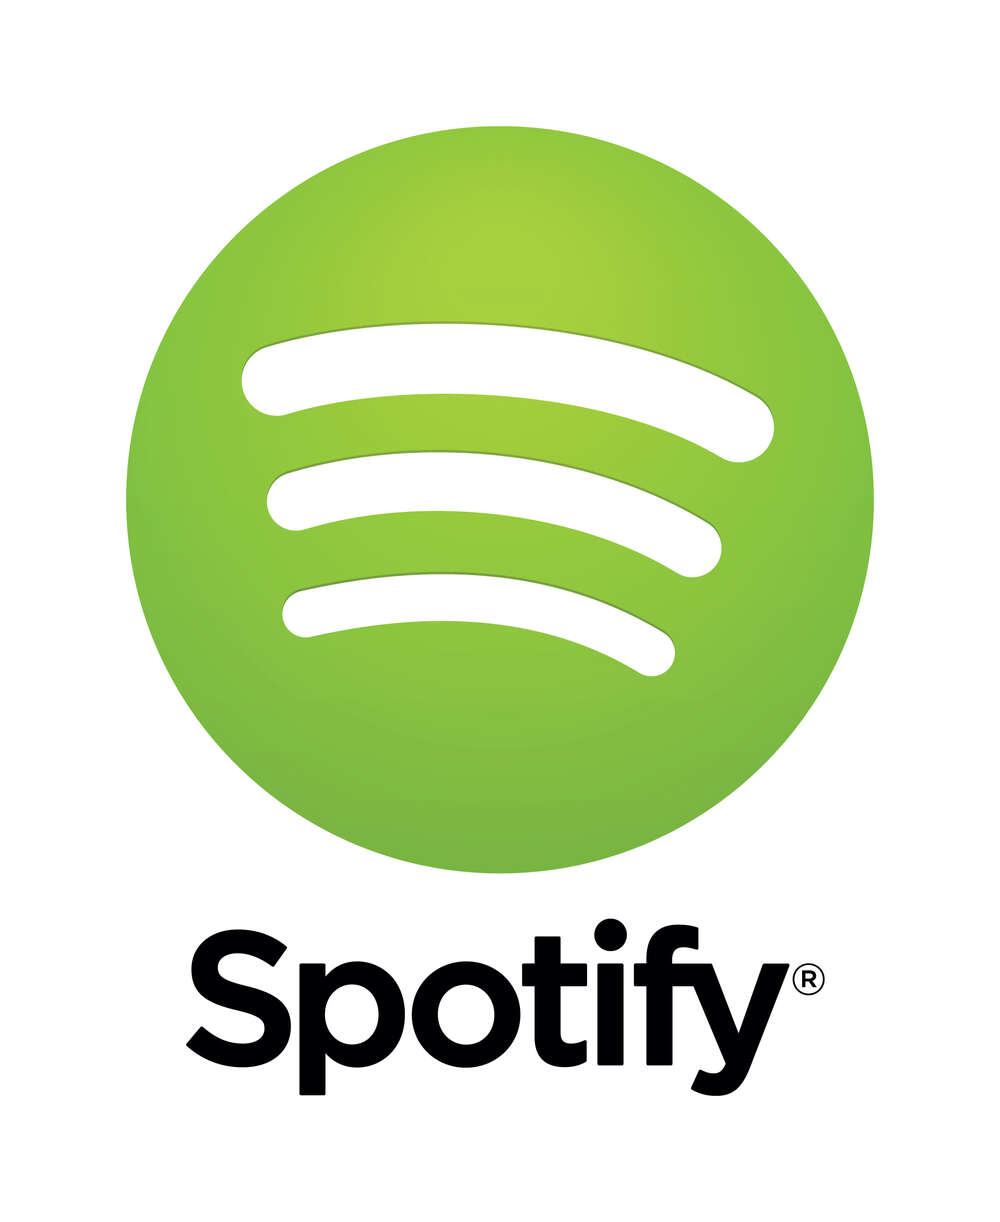 Näin Spotify-korvaukset valuvat artisteilta levy-yhtiöille